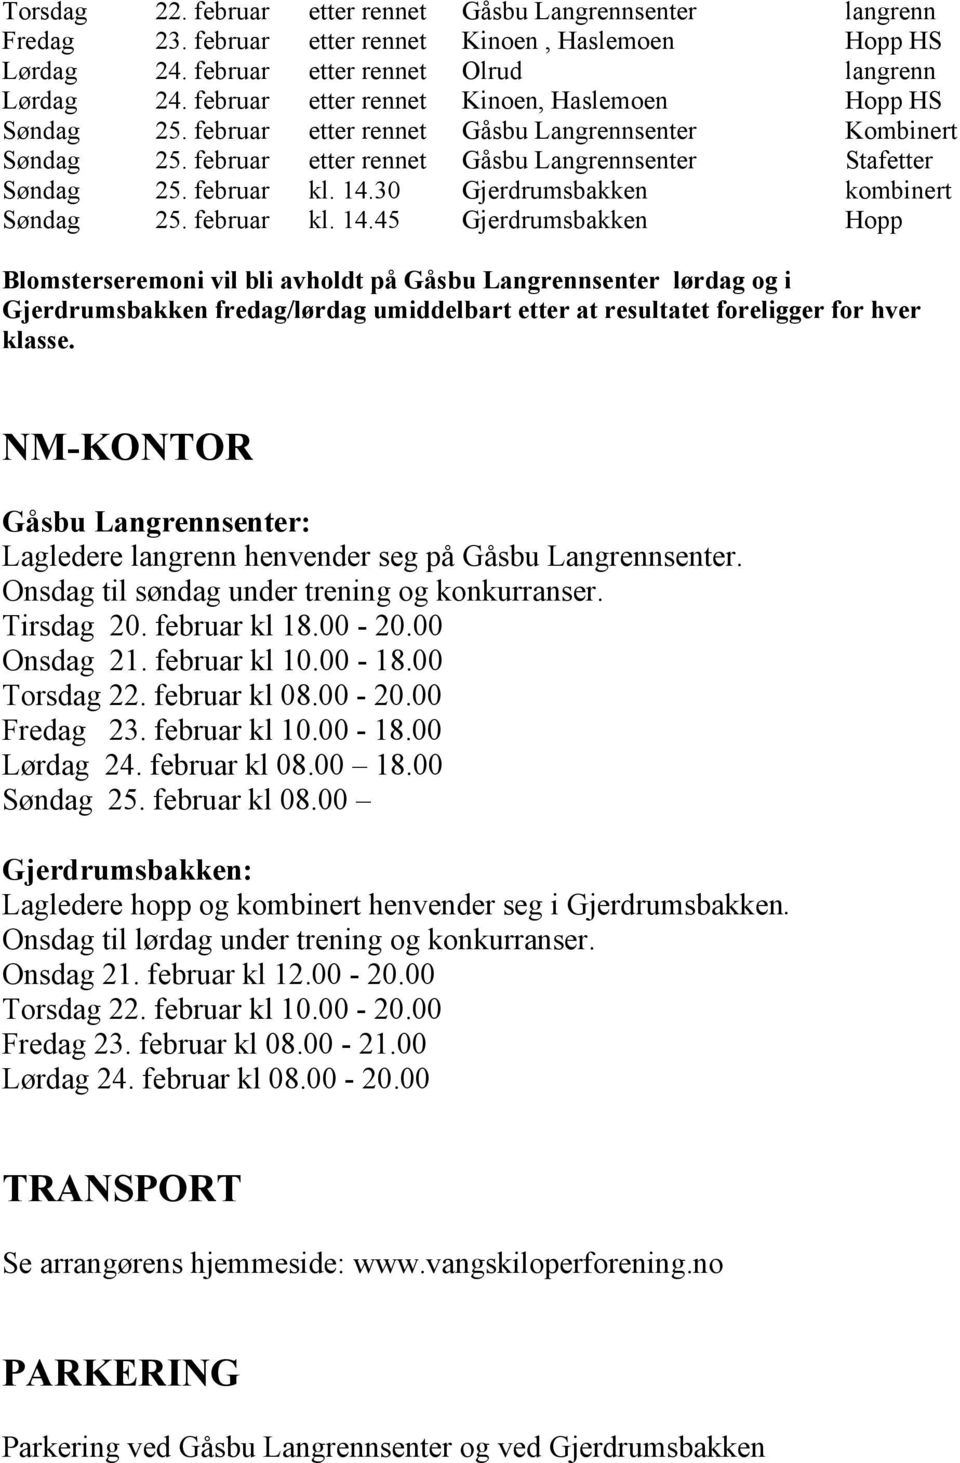 30 Gjerdrumsbakken kombinert Søndag 25. februar kl. 14.